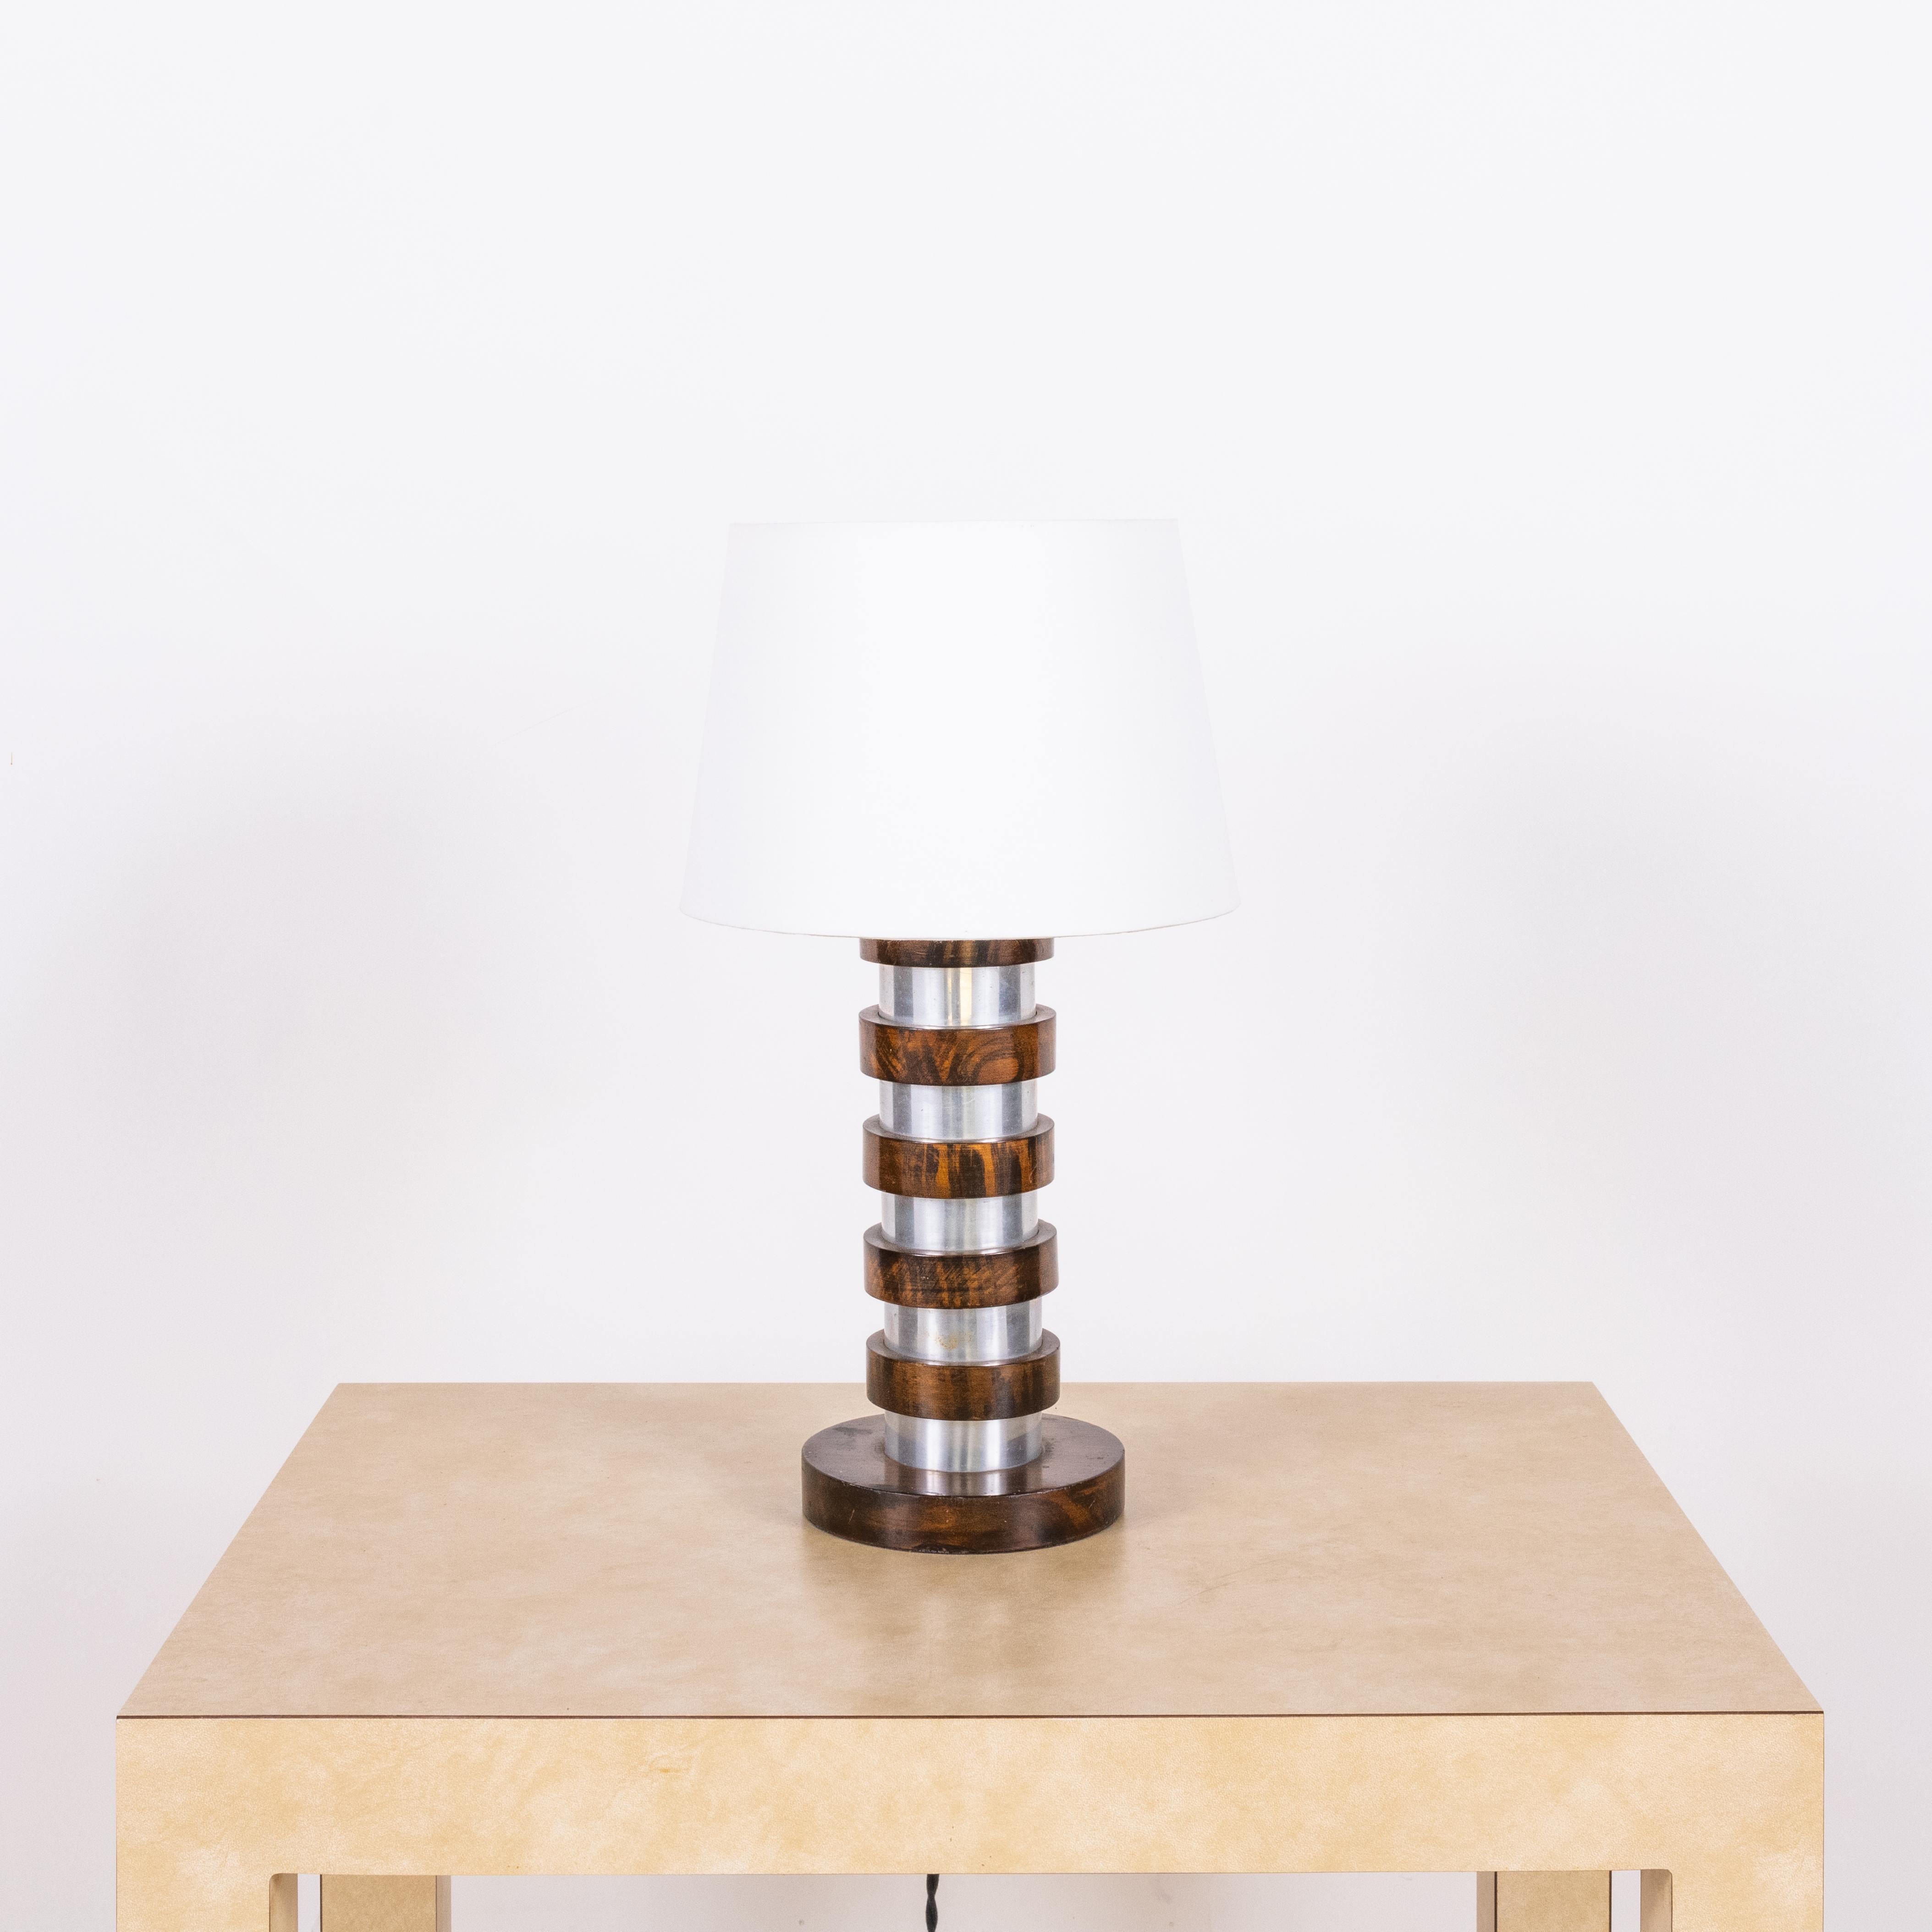 Lampe de bureau moderniste française chic avec abat-jour en parchemin.

Les dimensions indiquées (10 po de diamètre x 18 po de hauteur) sont les dimensions totales de la base de la lampe et de l'abat-jour. La base mesure 11 pouces de haut et